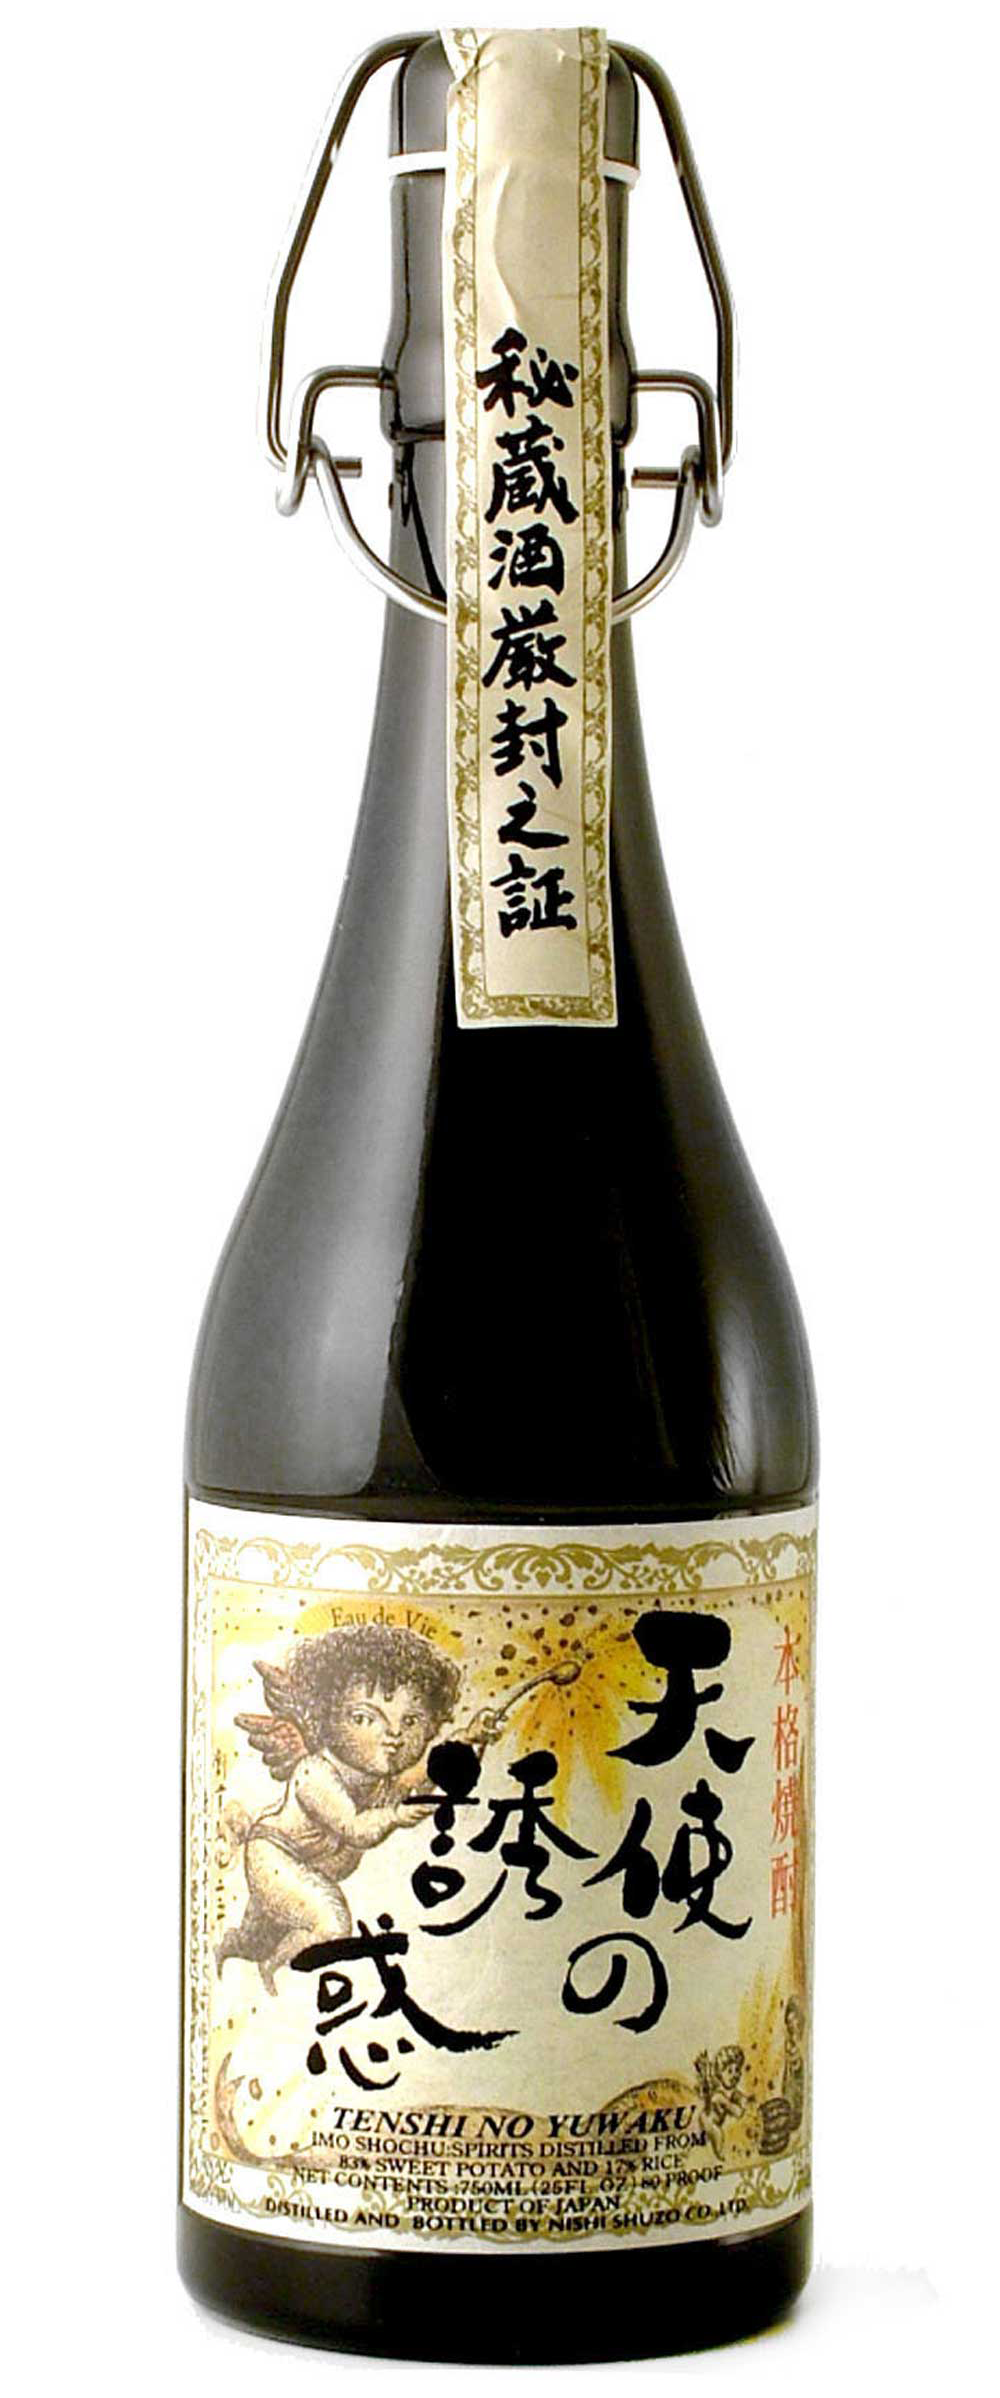 HOUZAN Tenshi no Yuwaku Imo Shochu 750 ml